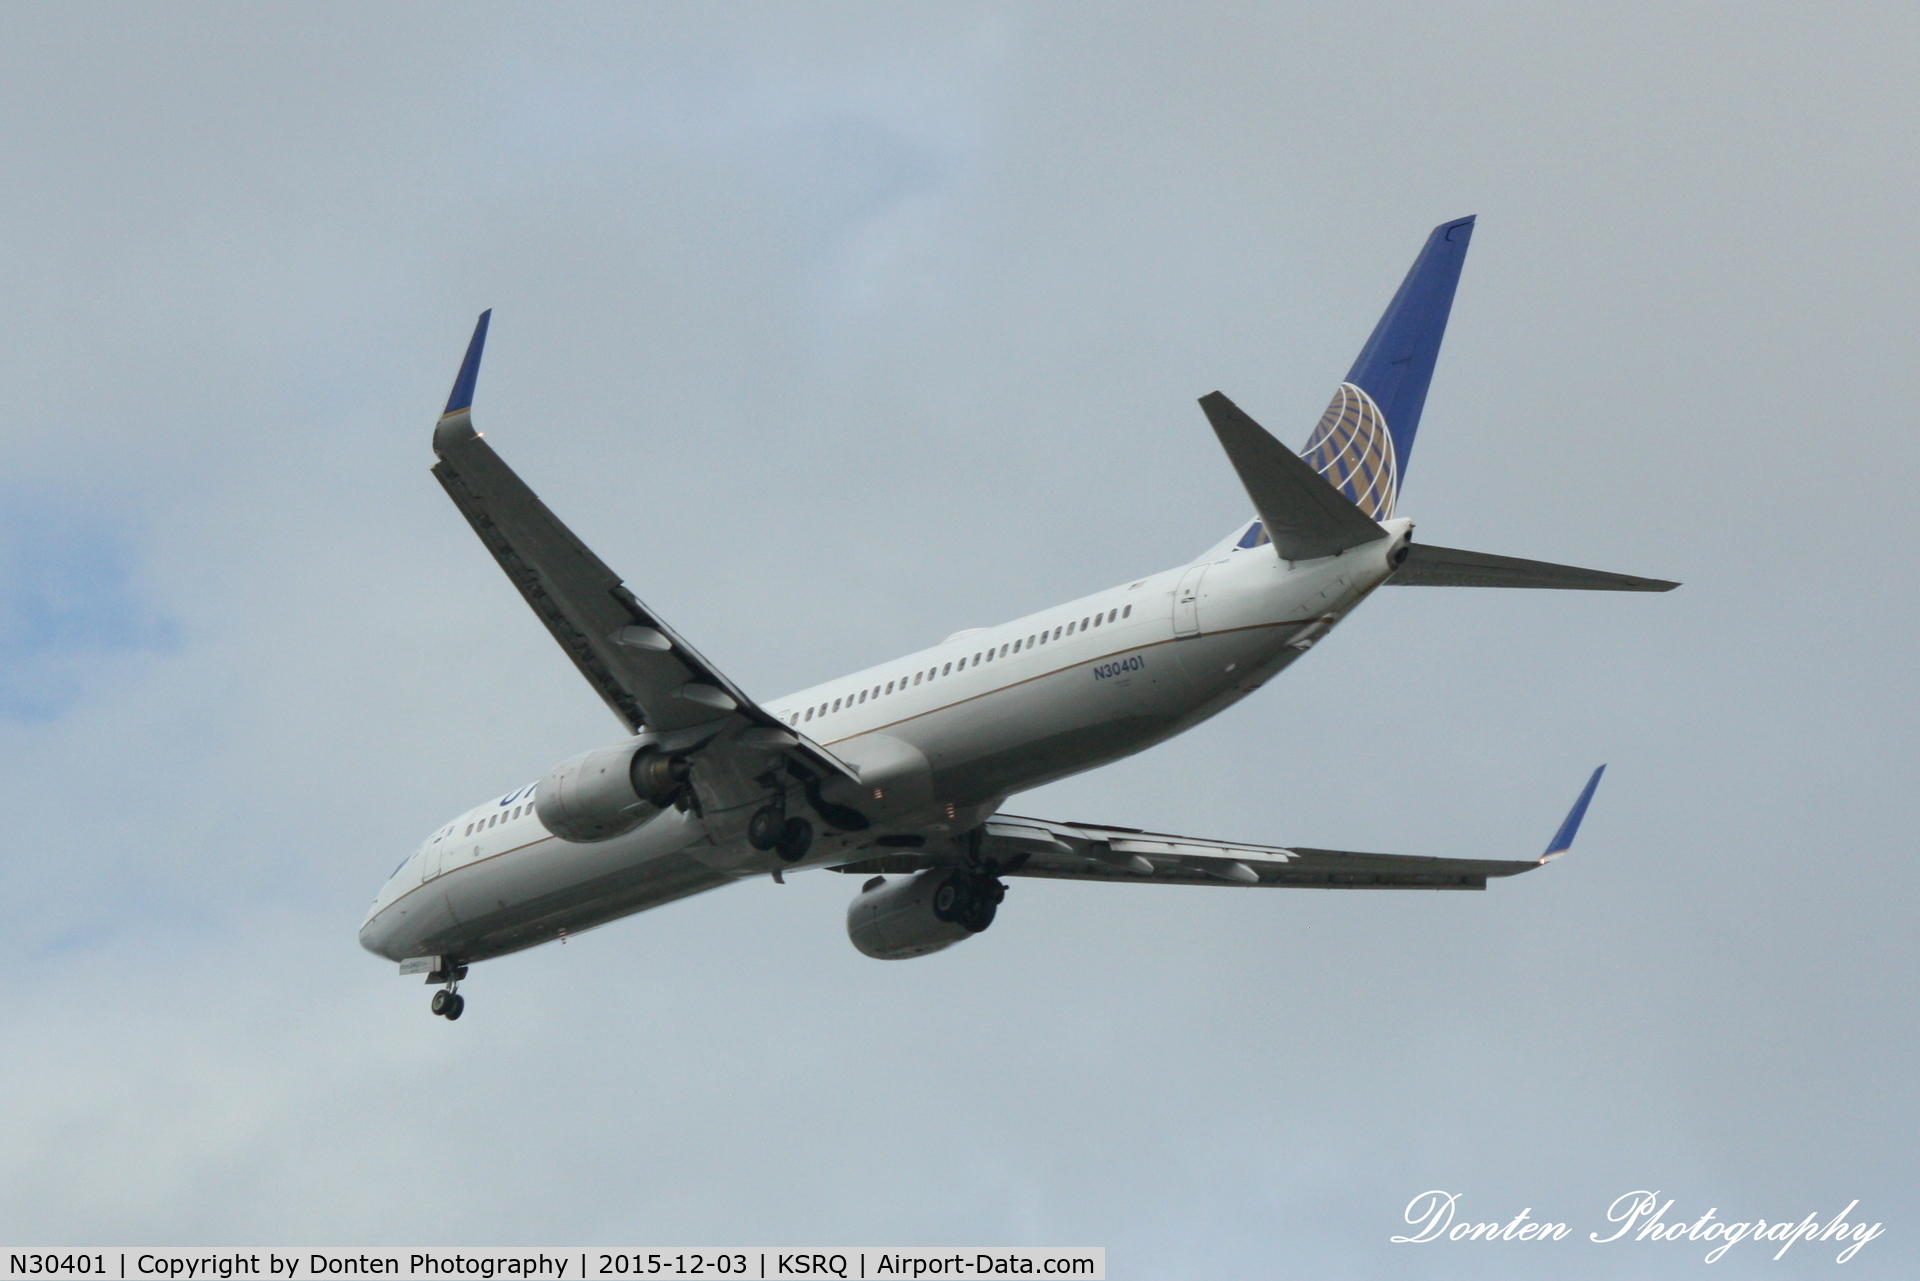 N30401, 2001 Boeing 737-924 C/N 30118, United Flight 1778 (N30401) arrives at Sarasota-Bradenton International Airport following flight from Chicago-O'Hare International Airport